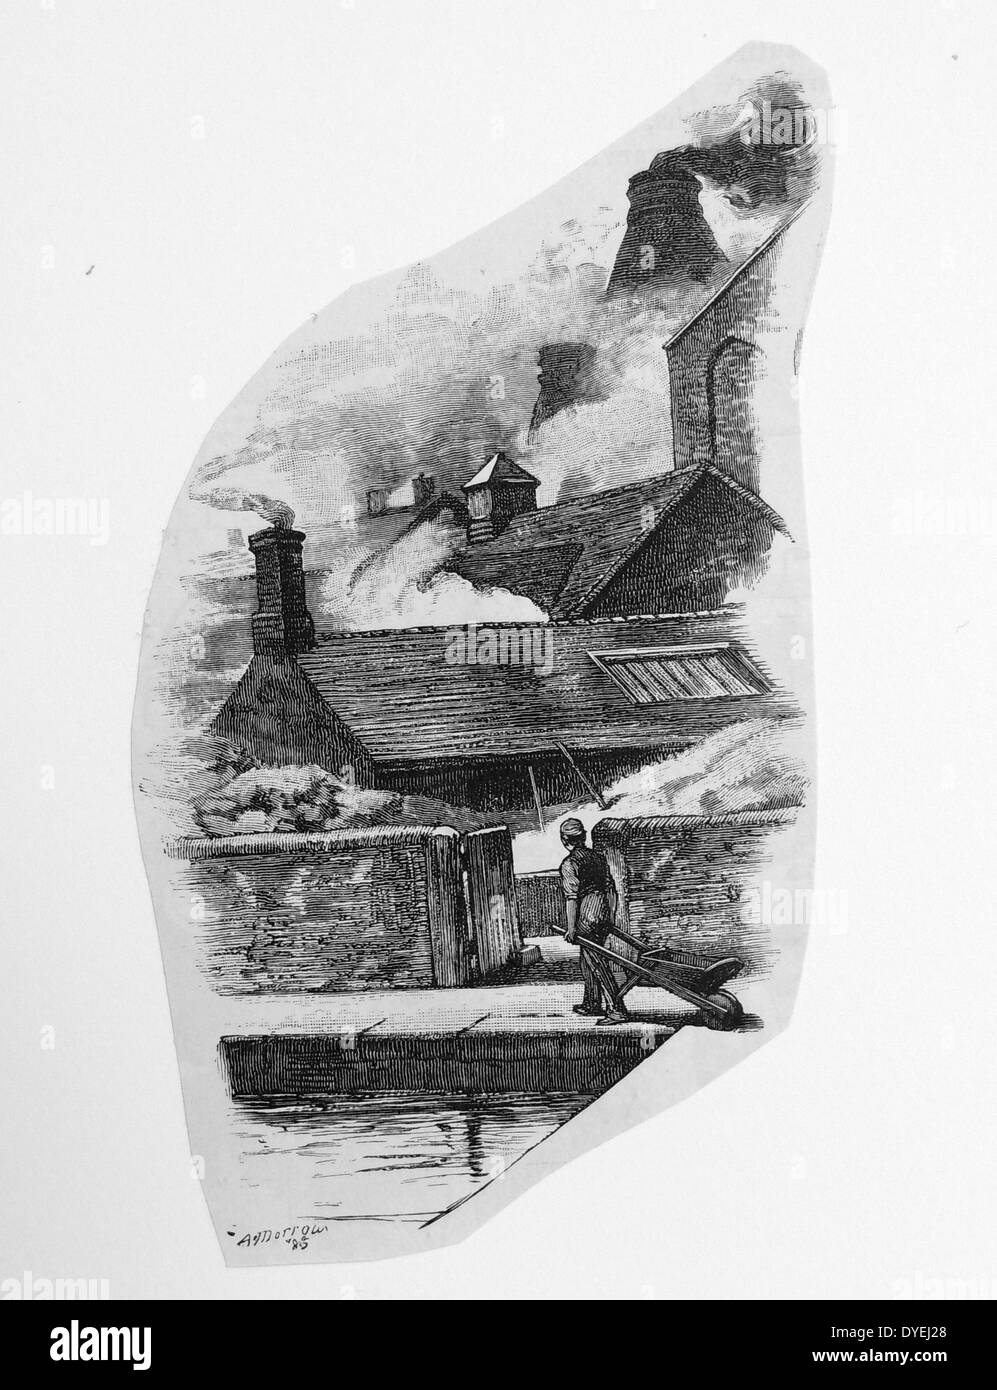 Parmi les fours, Stoke-on-Trent (Les poteries), Staffordshire, Angleterre. La gravure, Londres, 1885. Banque D'Images